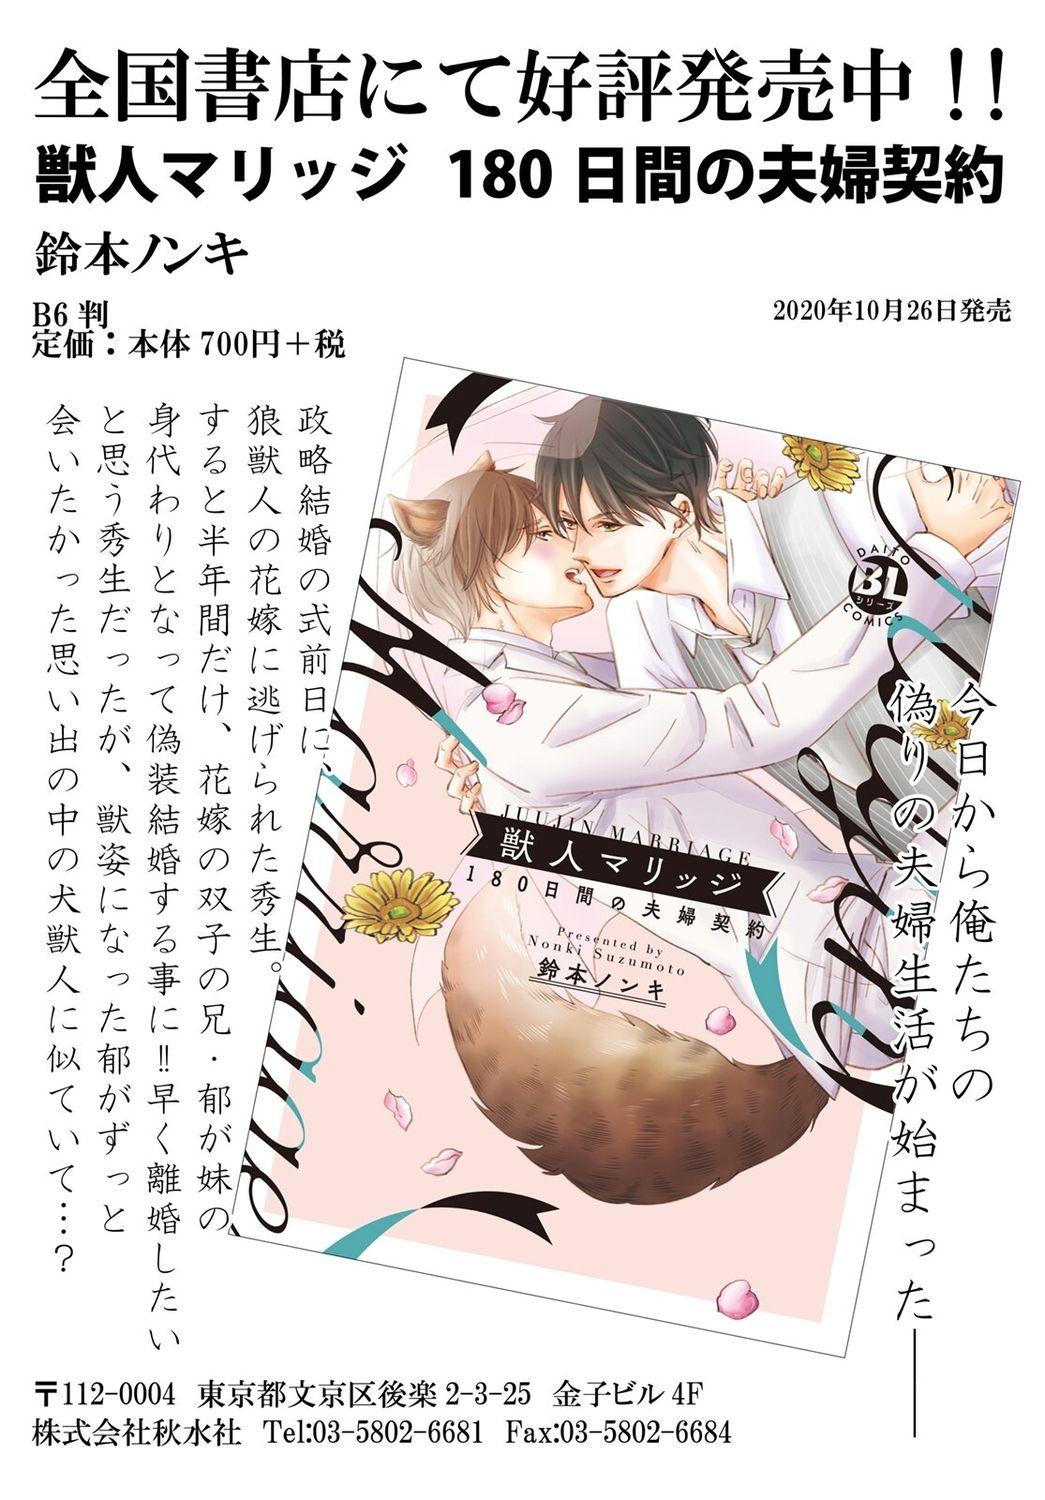 Ani o Yome ni Metorimasu ～ Kondo wa Tebanasanai ～ R18 Edition Vol. 1-4 62